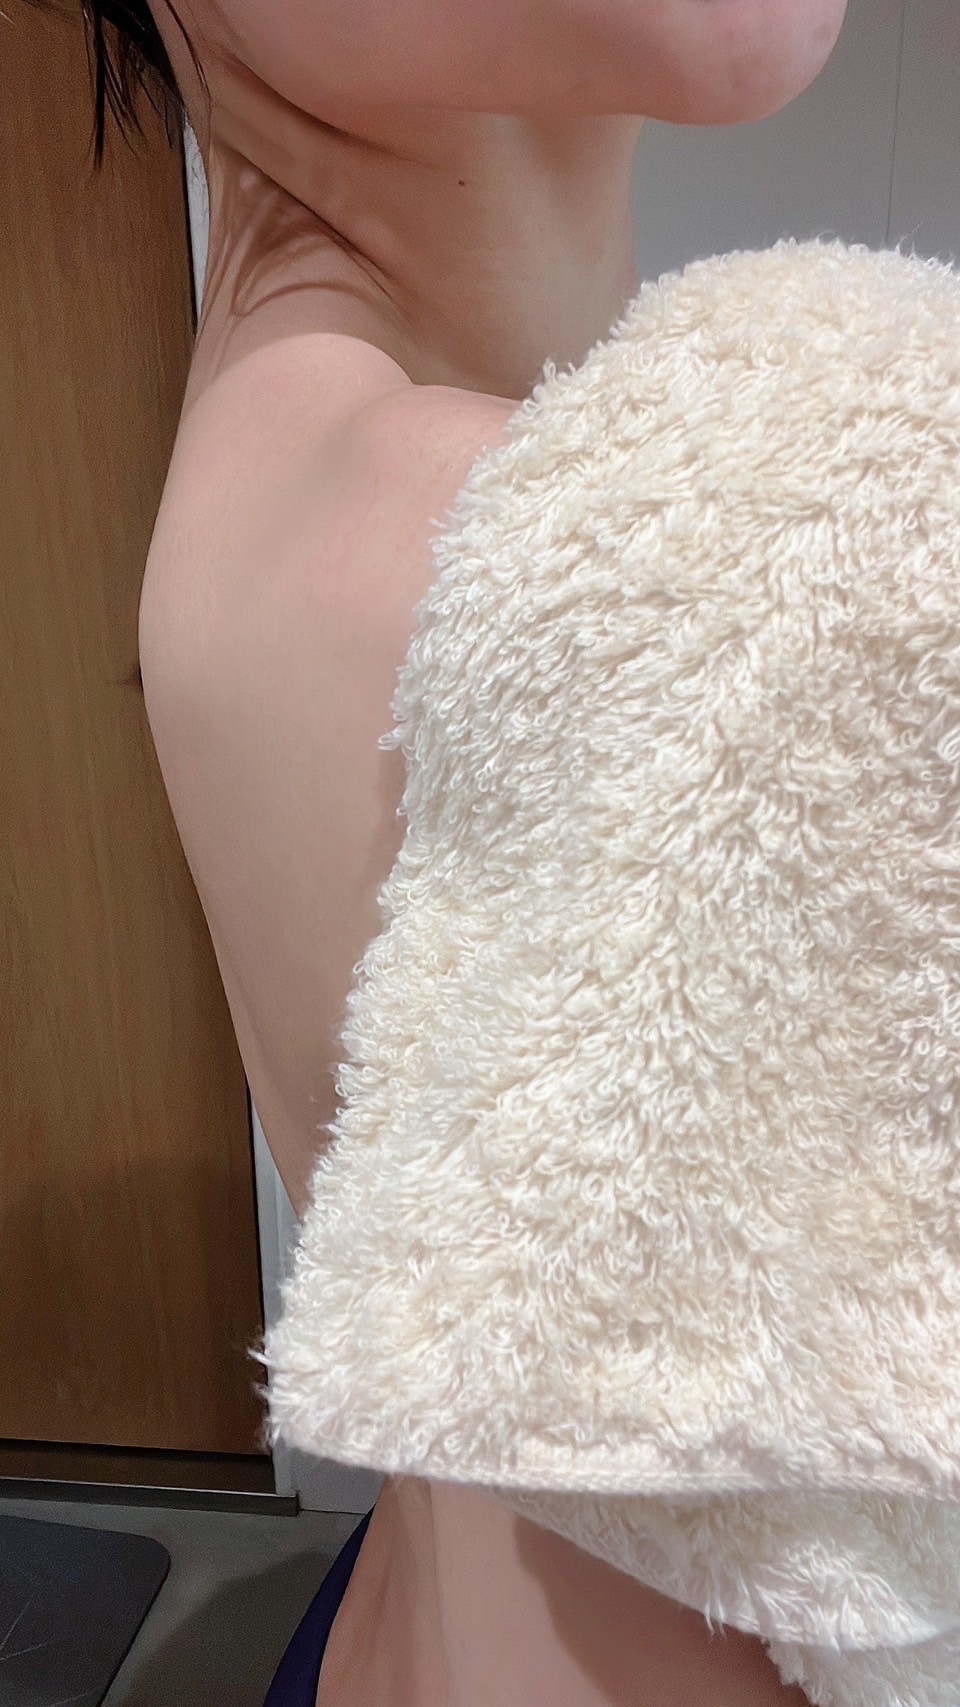 [啾團] 日本桃雪飯店用毛巾,用過就回不去的好用毛巾,日本製造,連續10年日本網購銷售冠軍毛巾